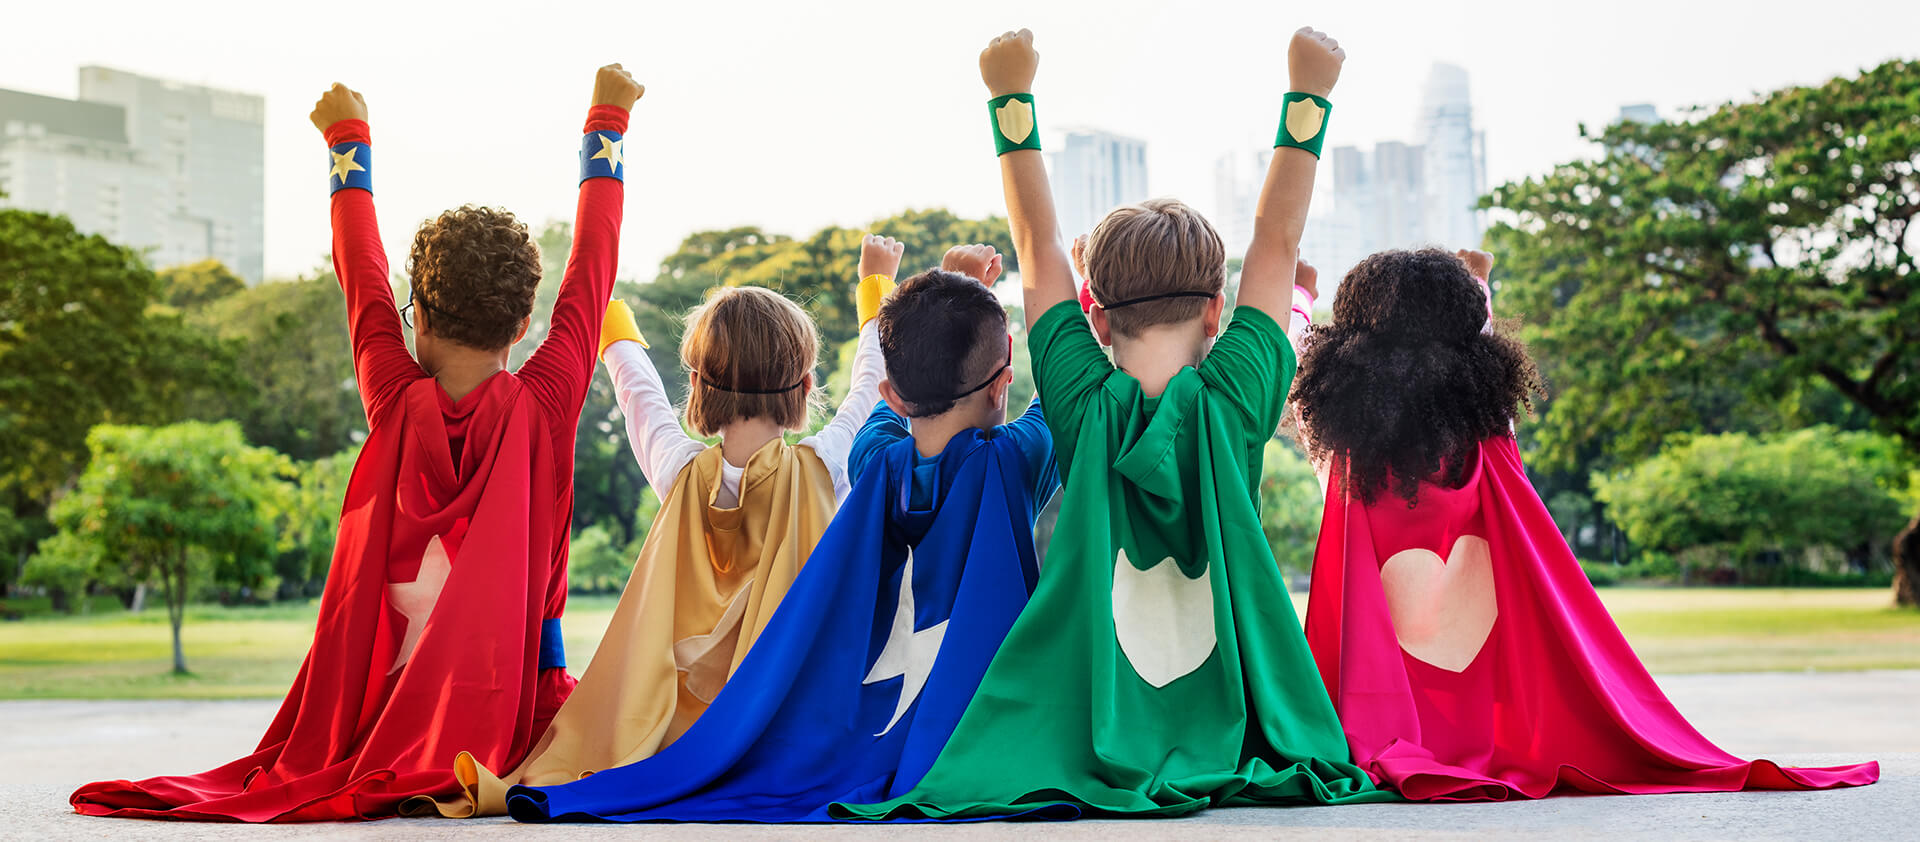 Little kids dressed as superheroes